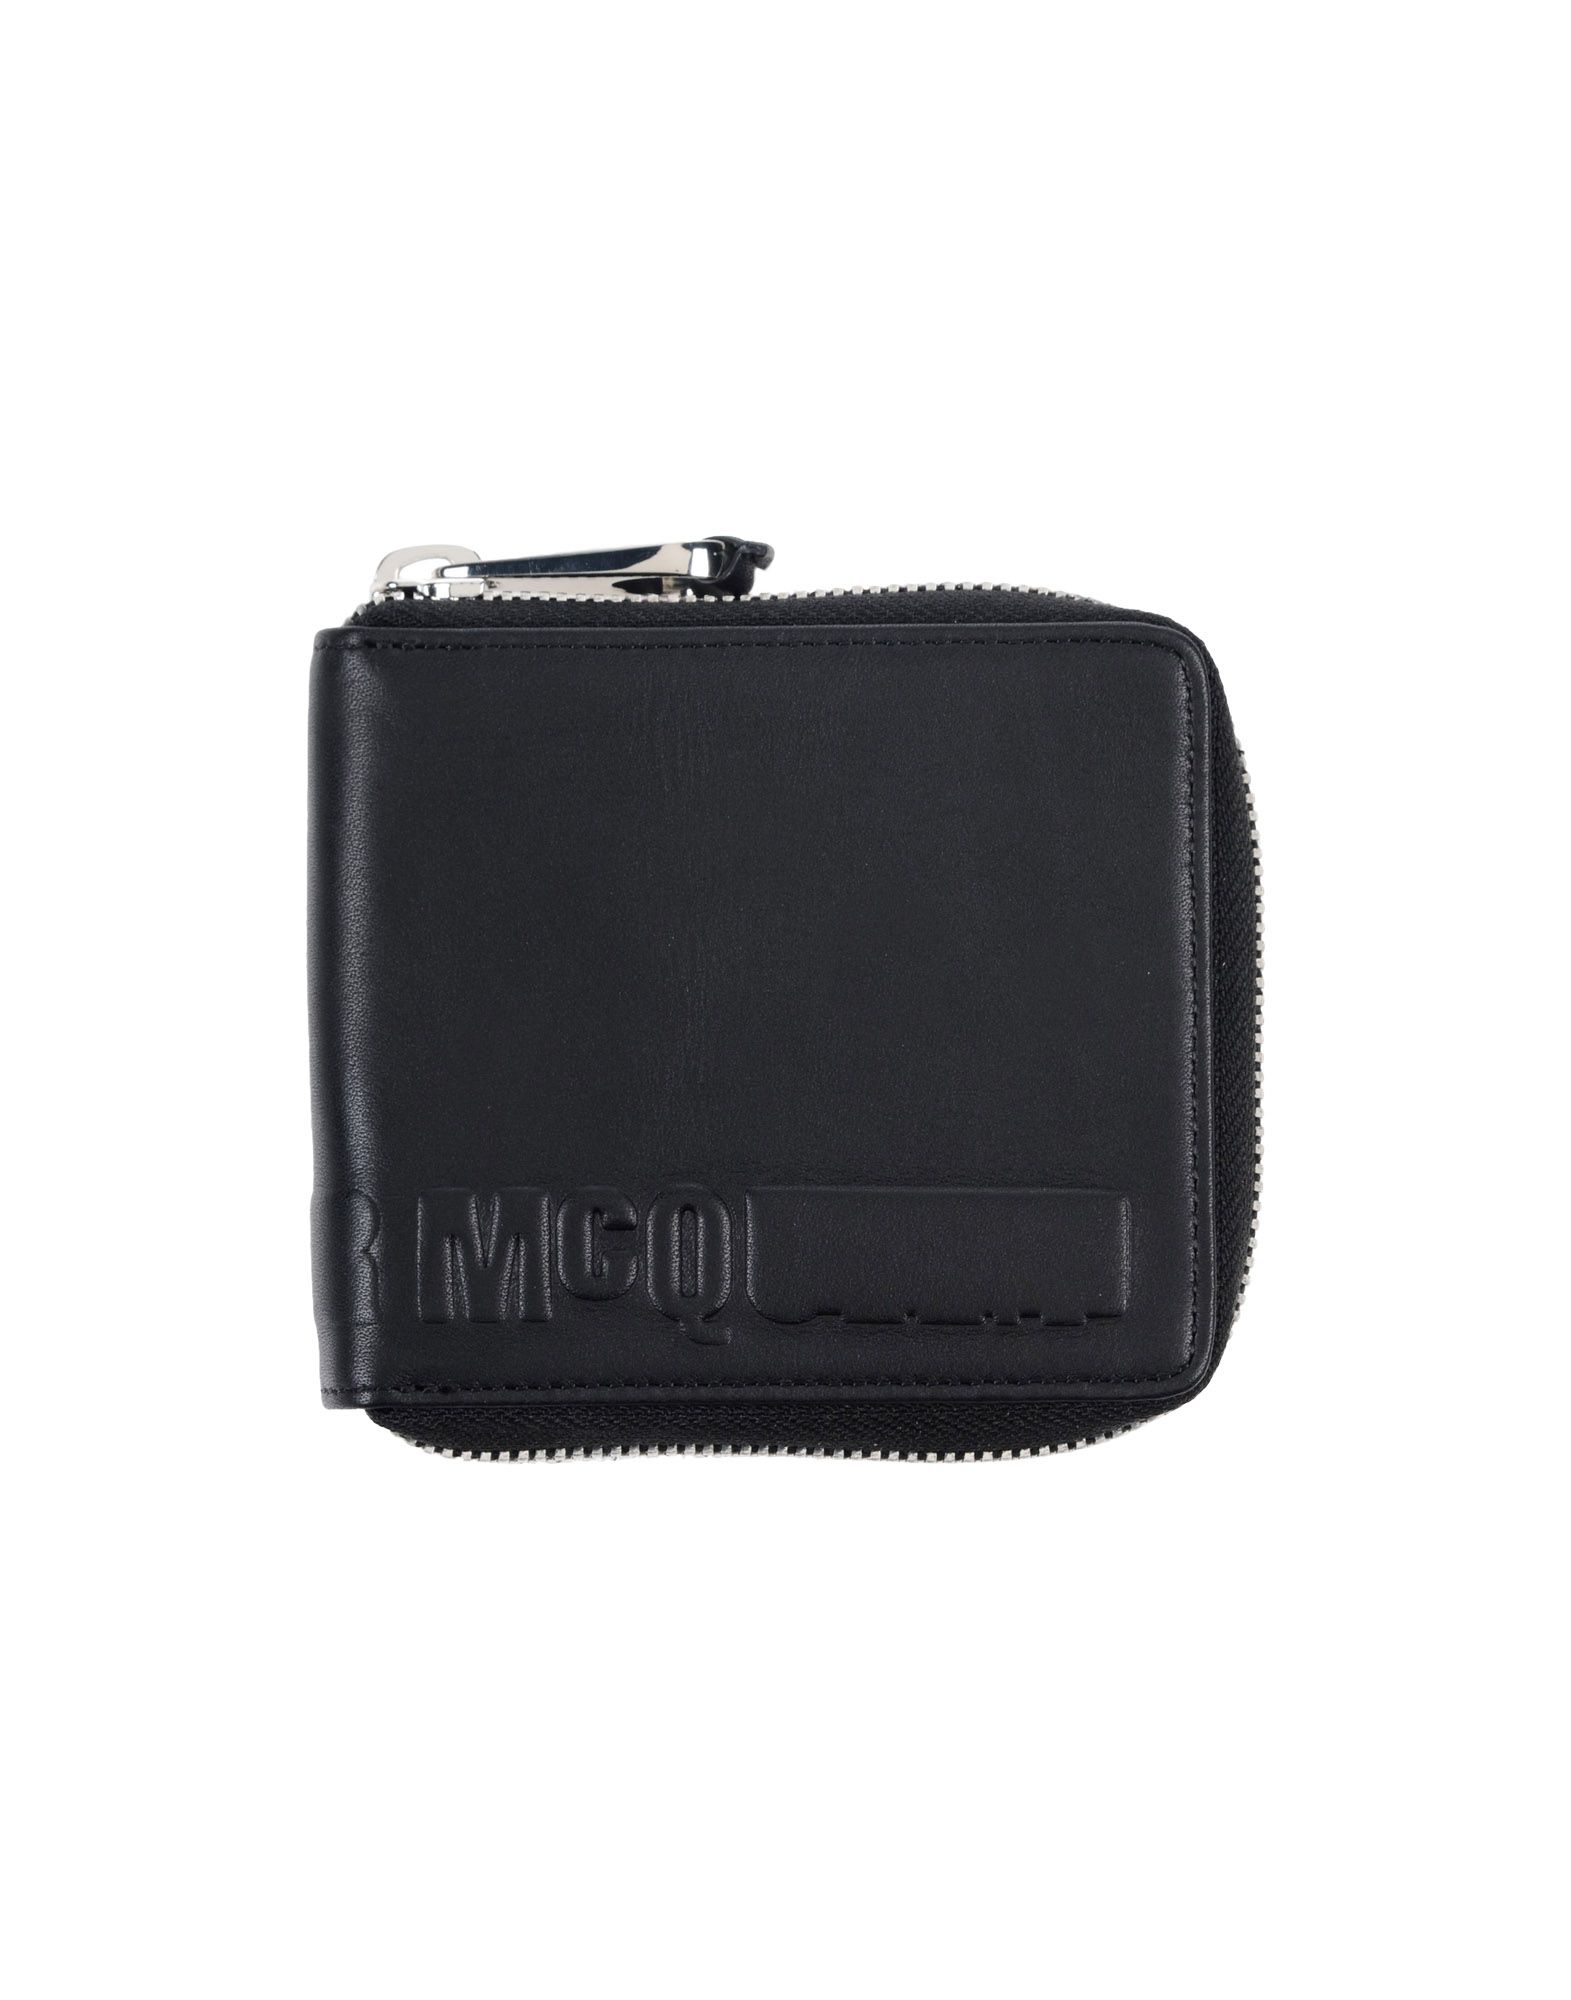 《送料無料》McQ Alexander McQueen メンズ 財布 ブラック 革